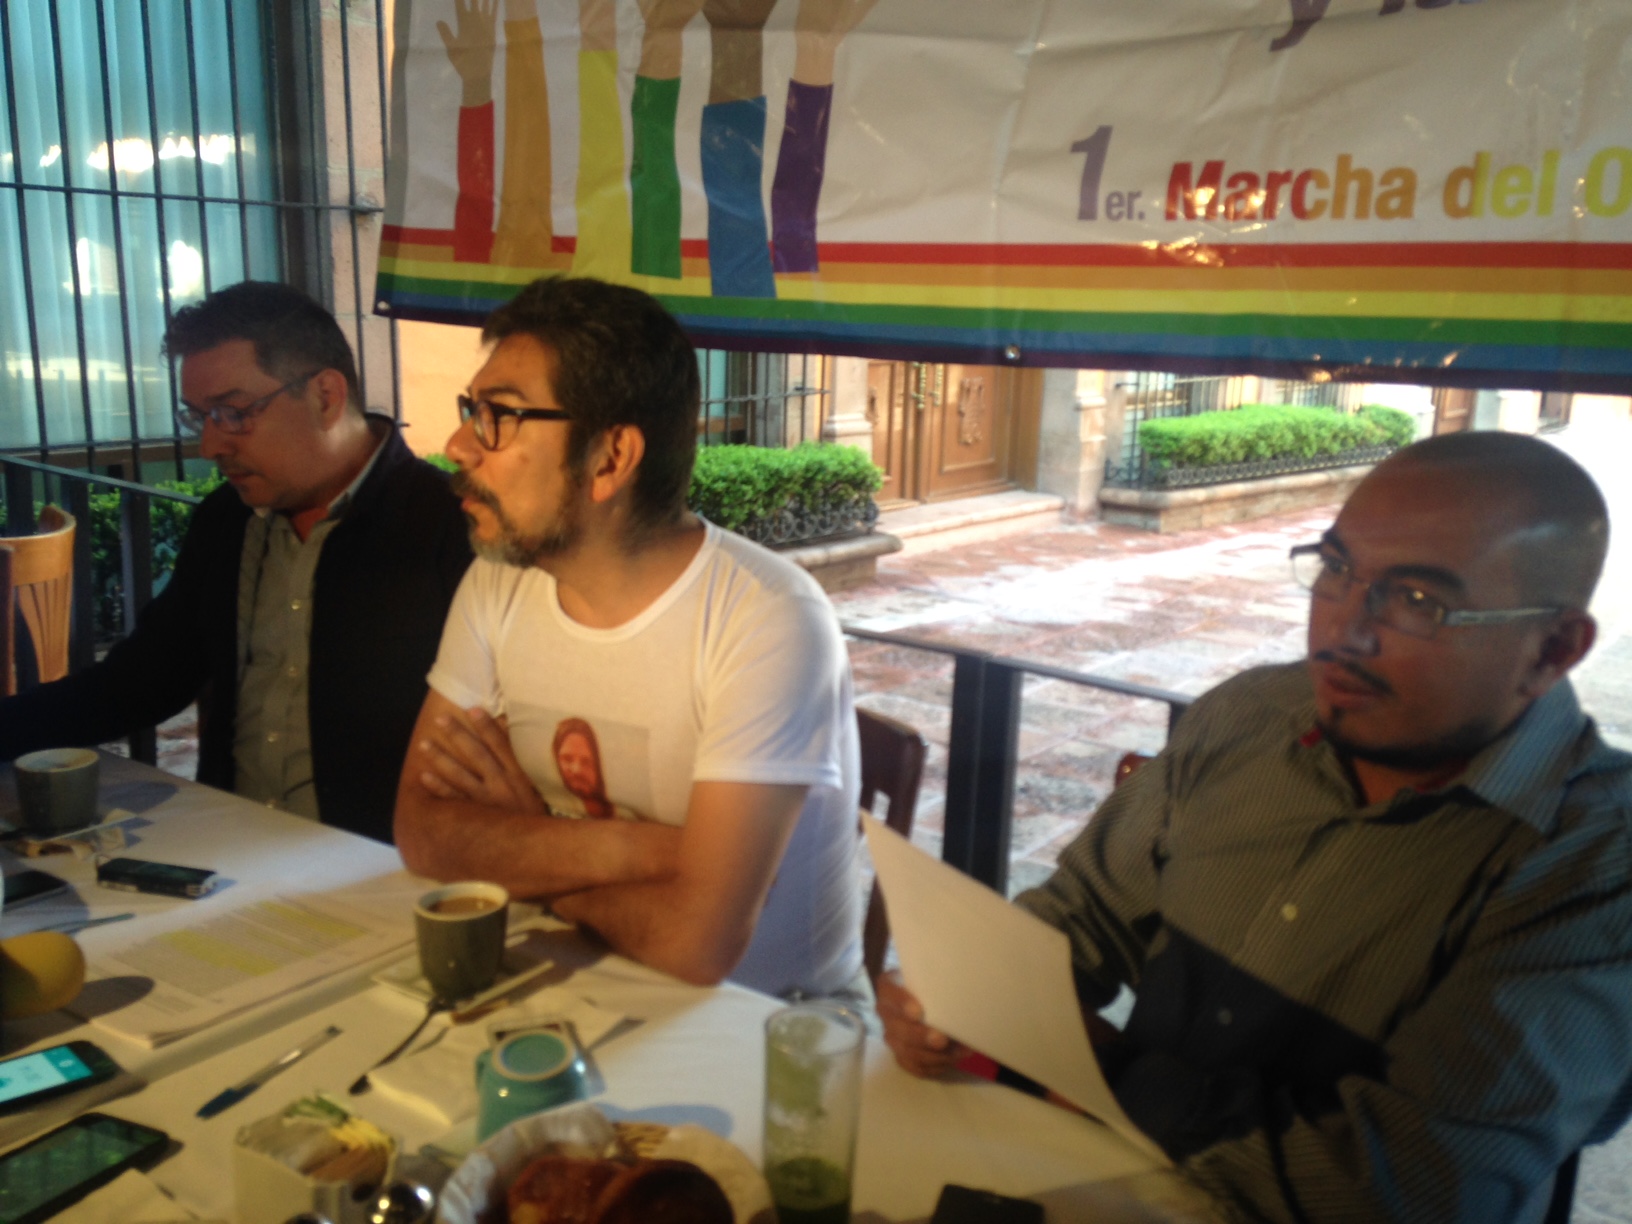  “No hubo agresiones”: Comunidad LGBT de Querétaro al Consejo Mexicano de la Familia